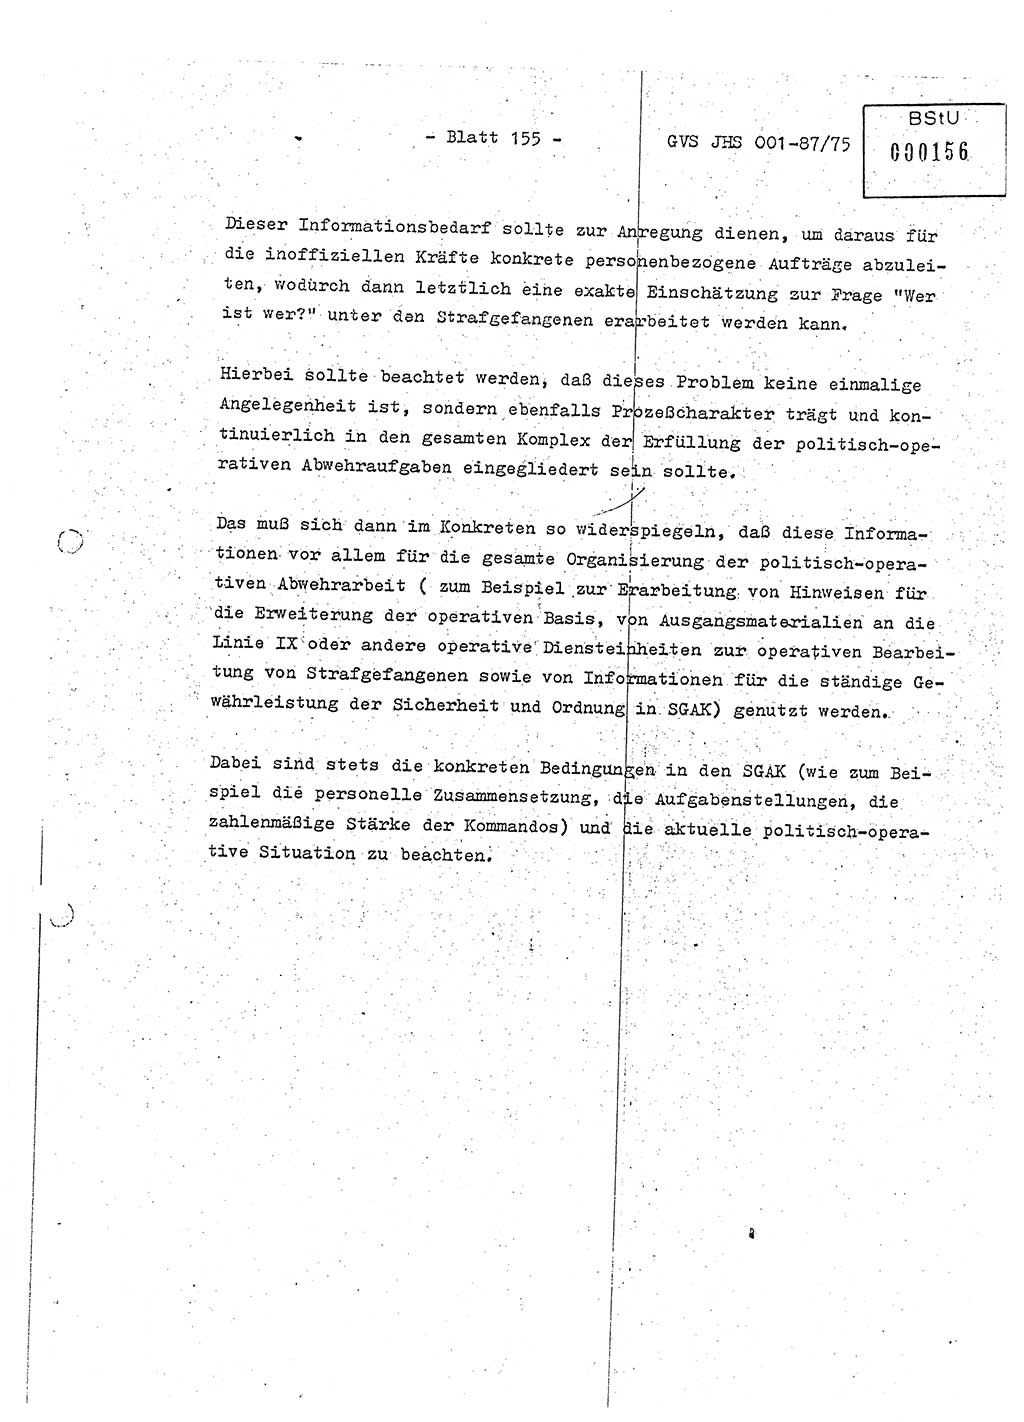 Diplomarbeit Hauptmann Volkmar Heinz (Abt. ⅩⅣ), Oberleutnant Lothar Rüdiger (BV Lpz. Abt. Ⅺ), Ministerium für Staatssicherheit (MfS) [Deutsche Demokratische Republik (DDR)], Juristische Hochschule (JHS), Geheime Verschlußsache (GVS) o001-87/75, Potsdam 1975, Seite 155 (Dipl.-Arb. MfS DDR JHS GVS o001-87/75 1975, S. 155)